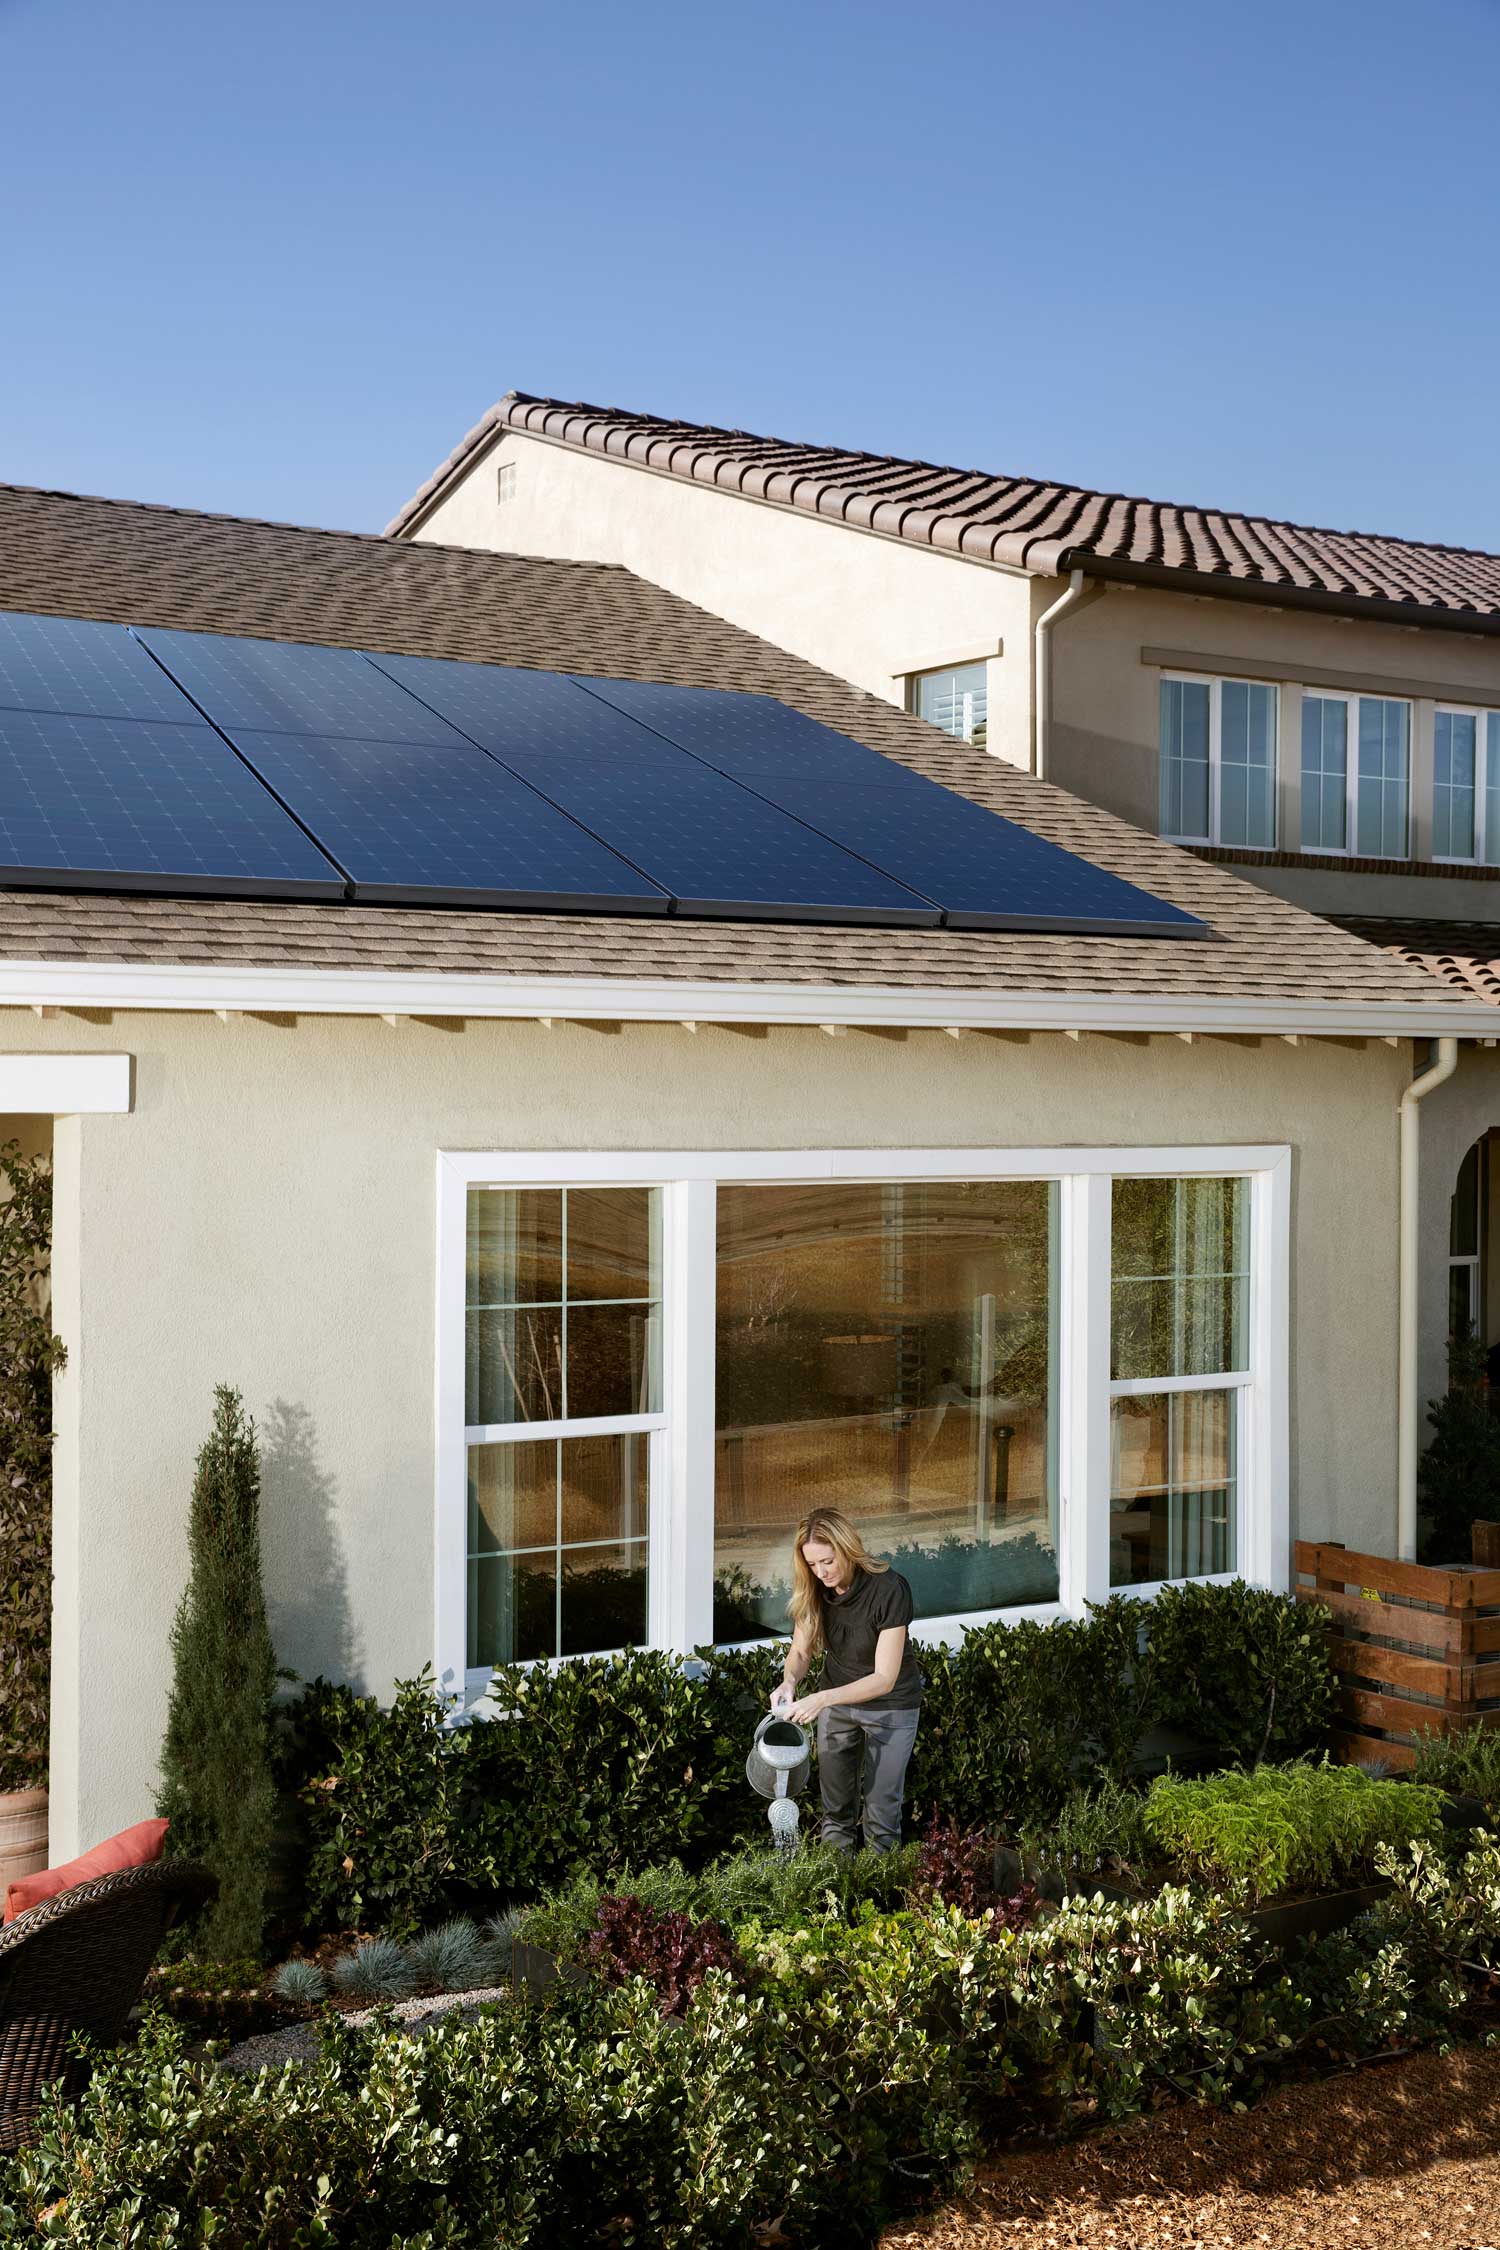 SunPower by Custom Energy is the best company for solar savings in Ephraim.